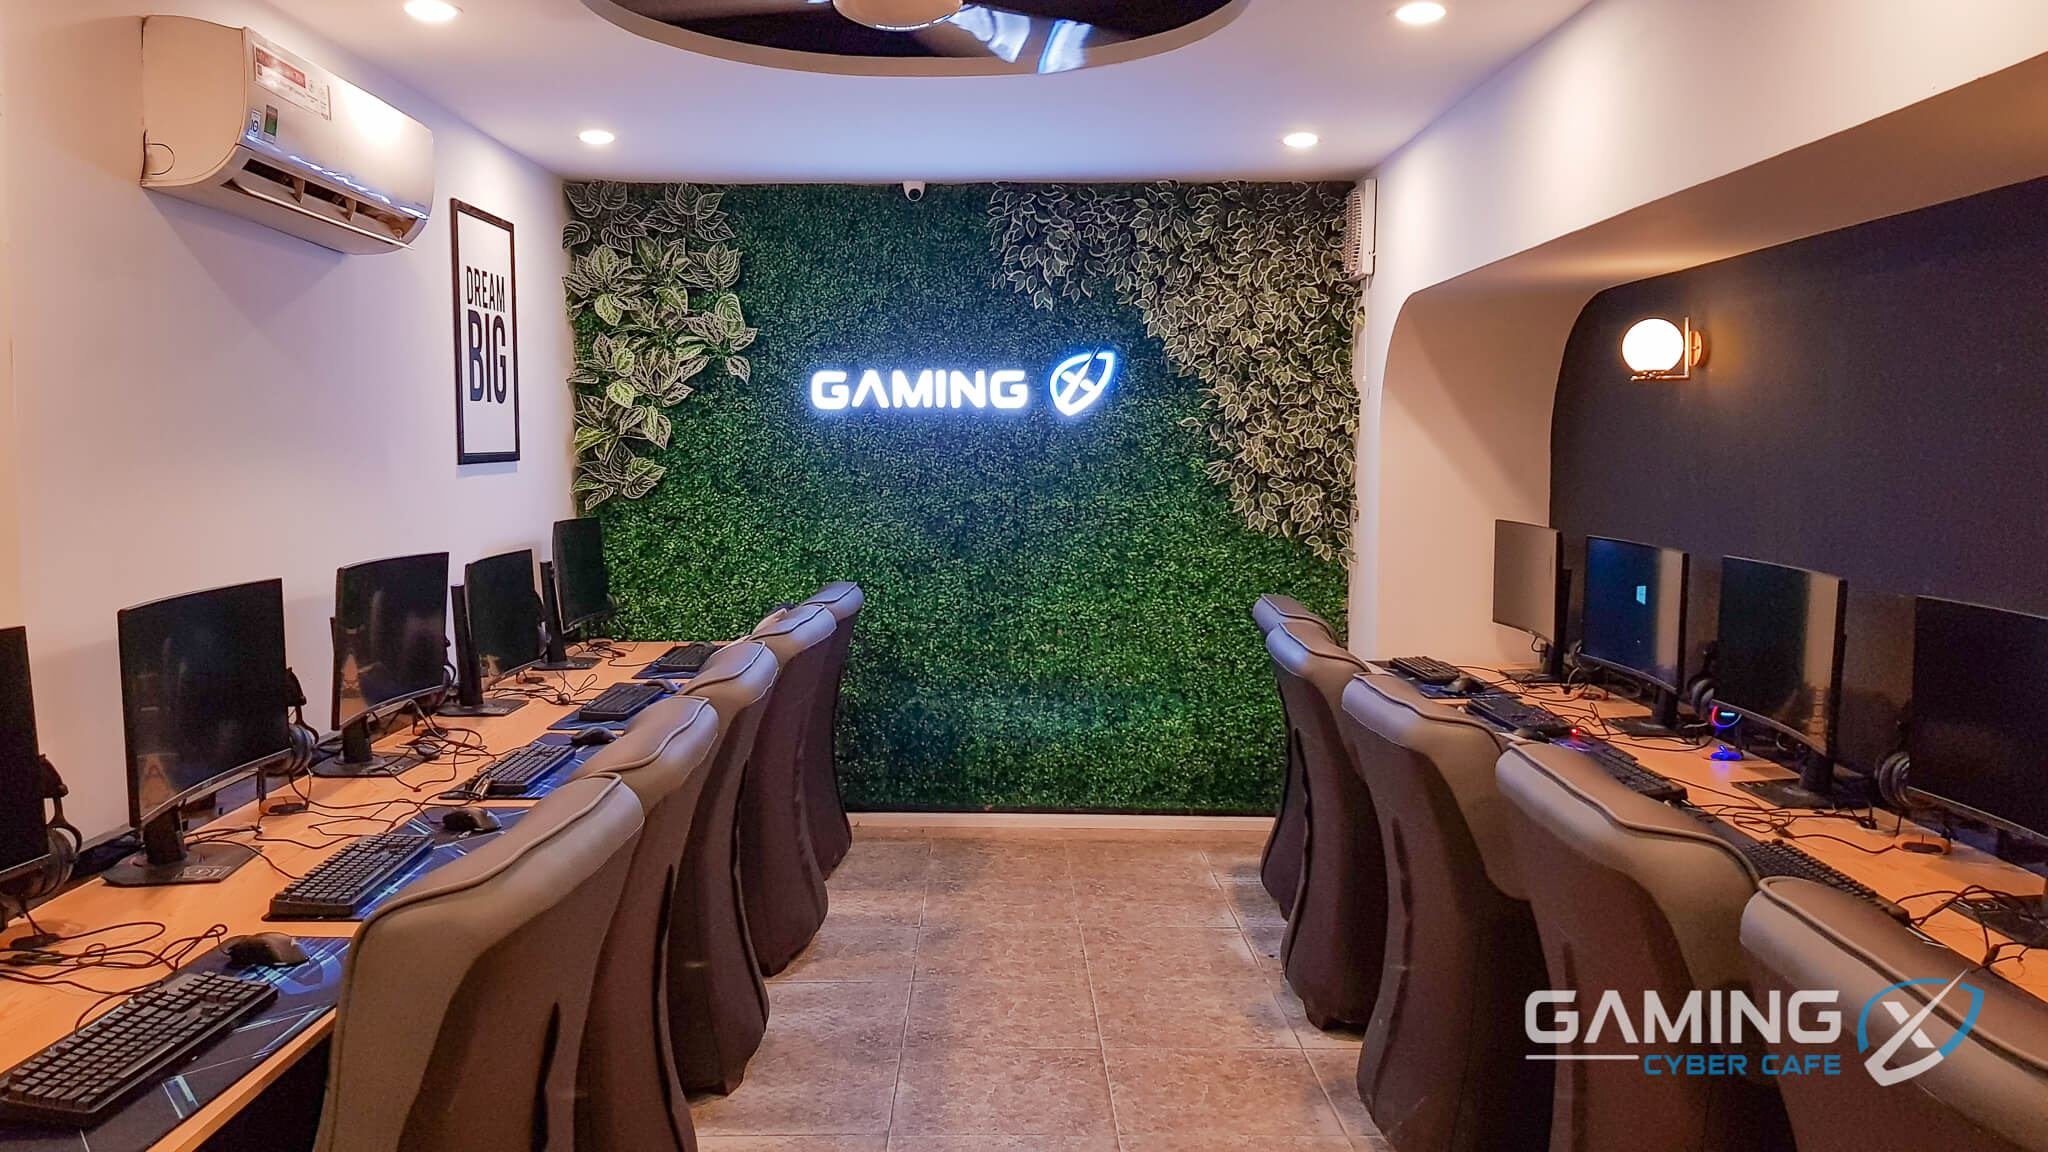 Gaming X Trương Định